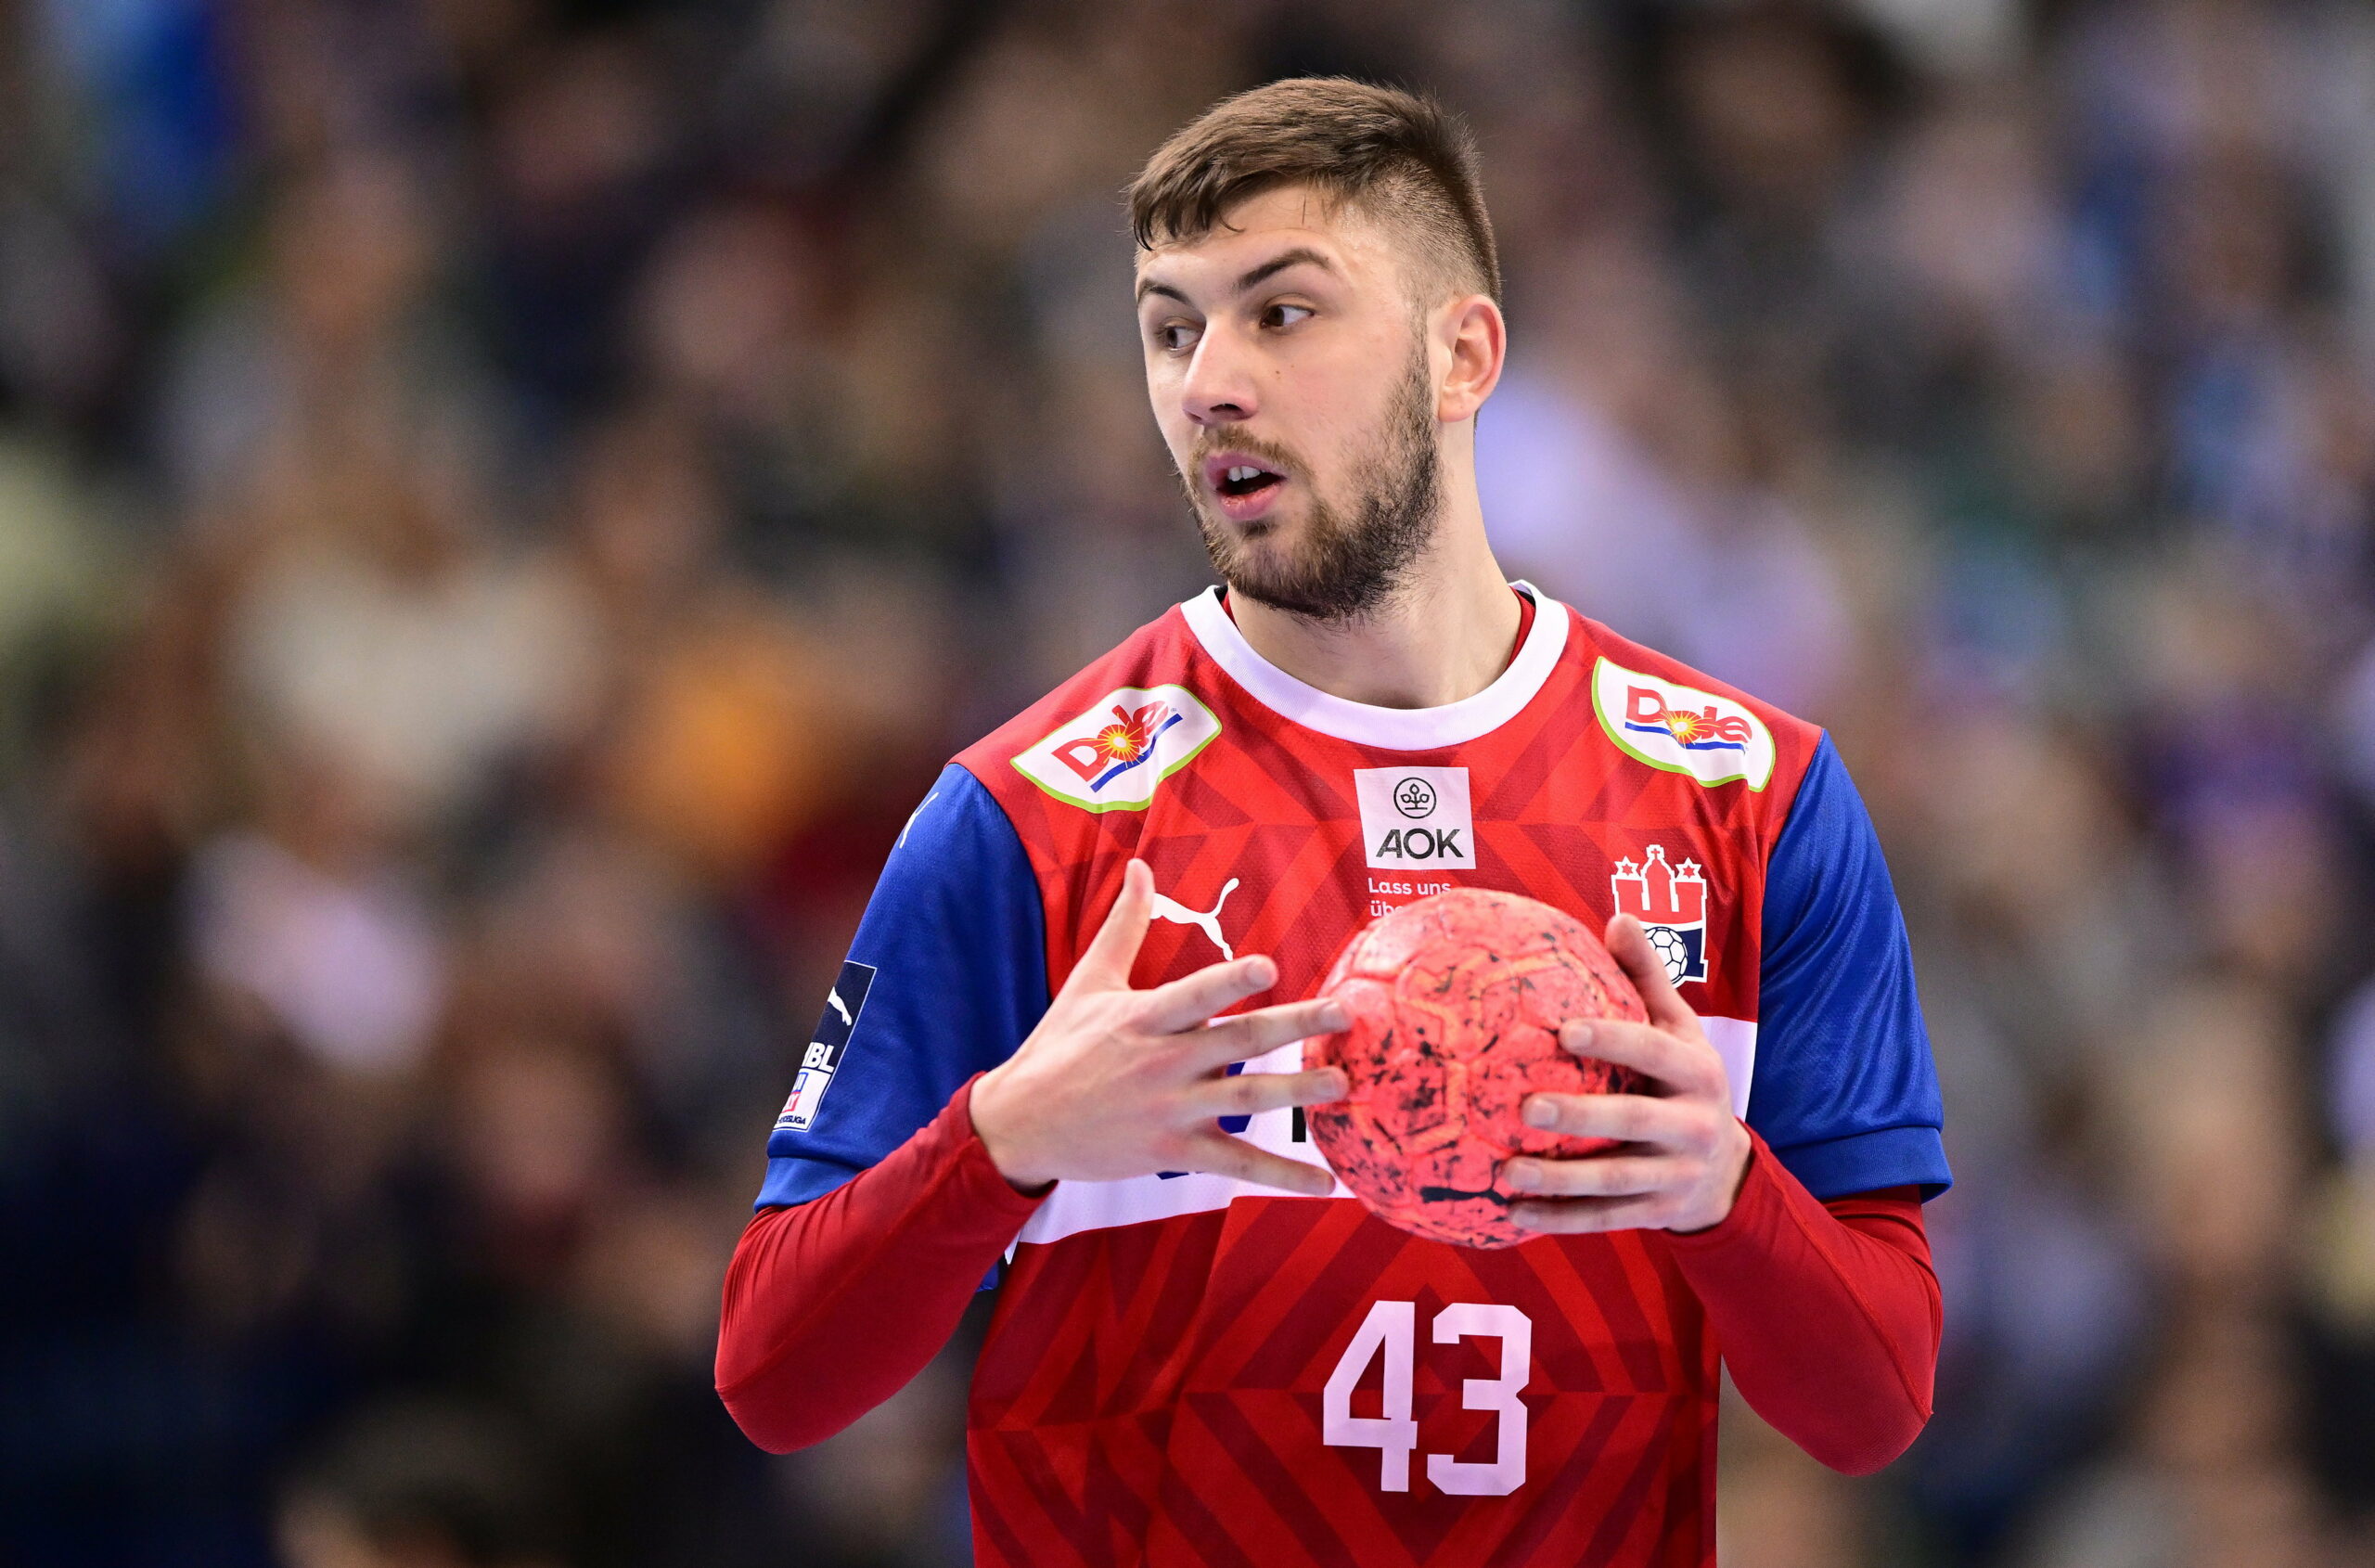 Zoran Ilic mit dem Handball in der Hand